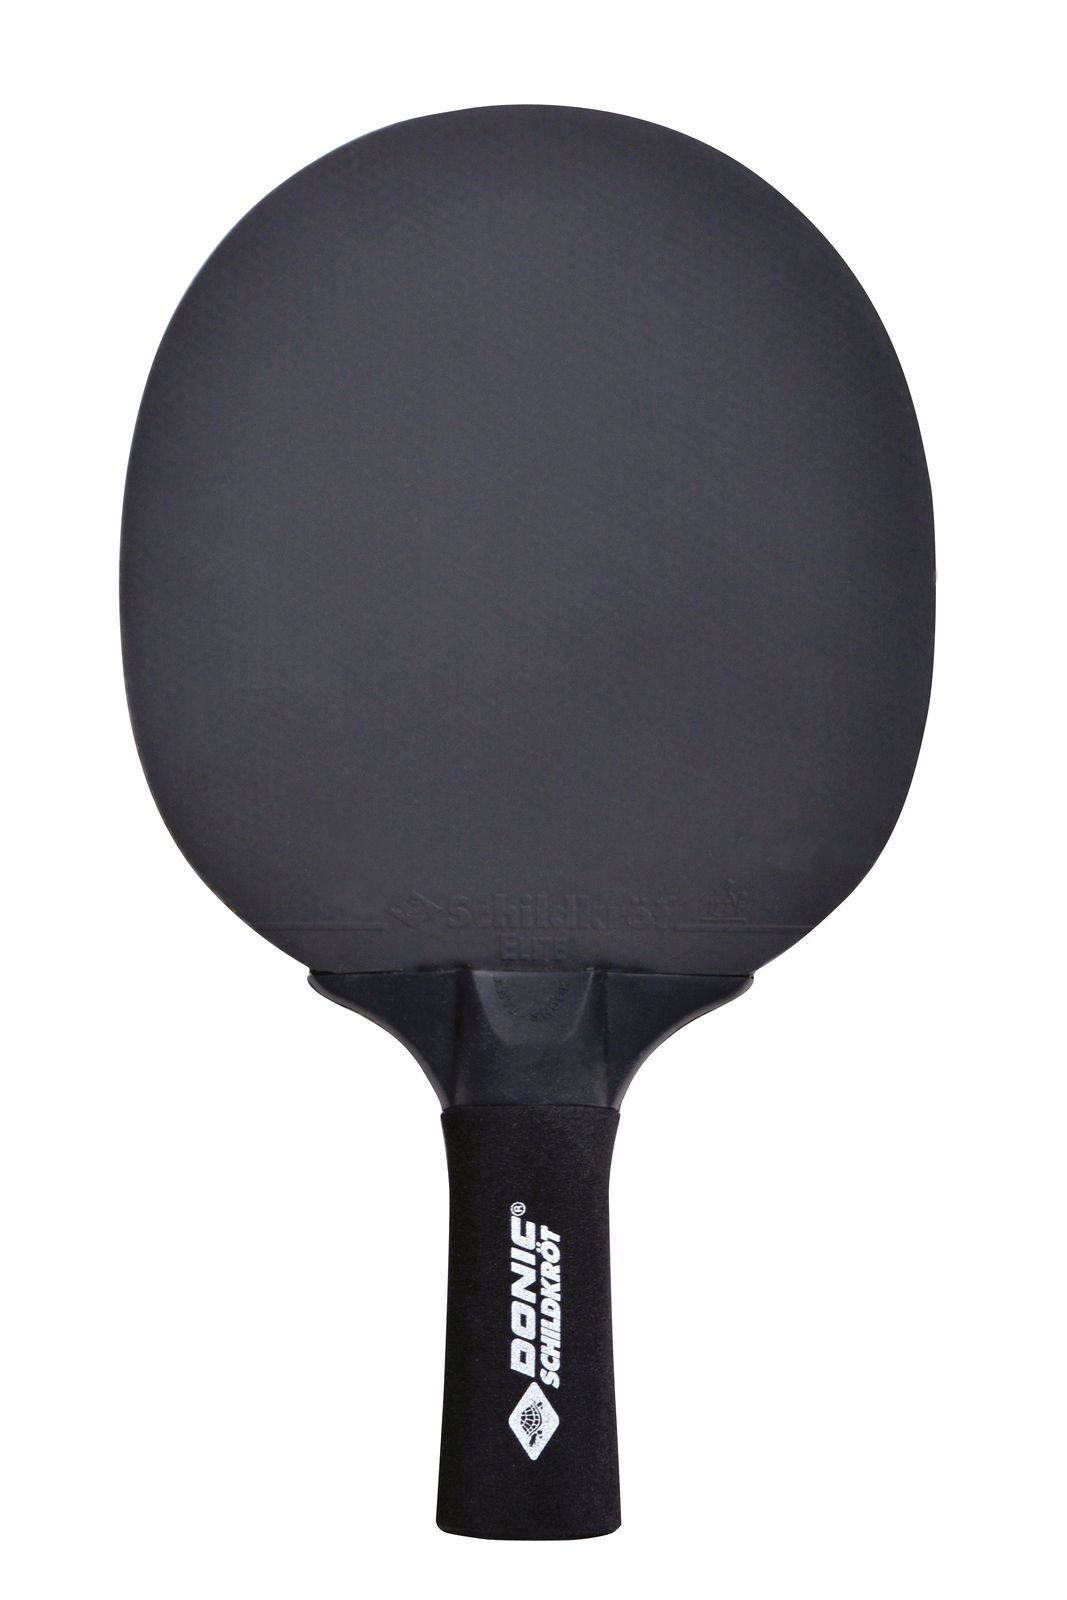 Donic-Schildkröt Tischtennisschläger Sensation Line Tennis Racket Schläger Tischtennis Table Bat 500